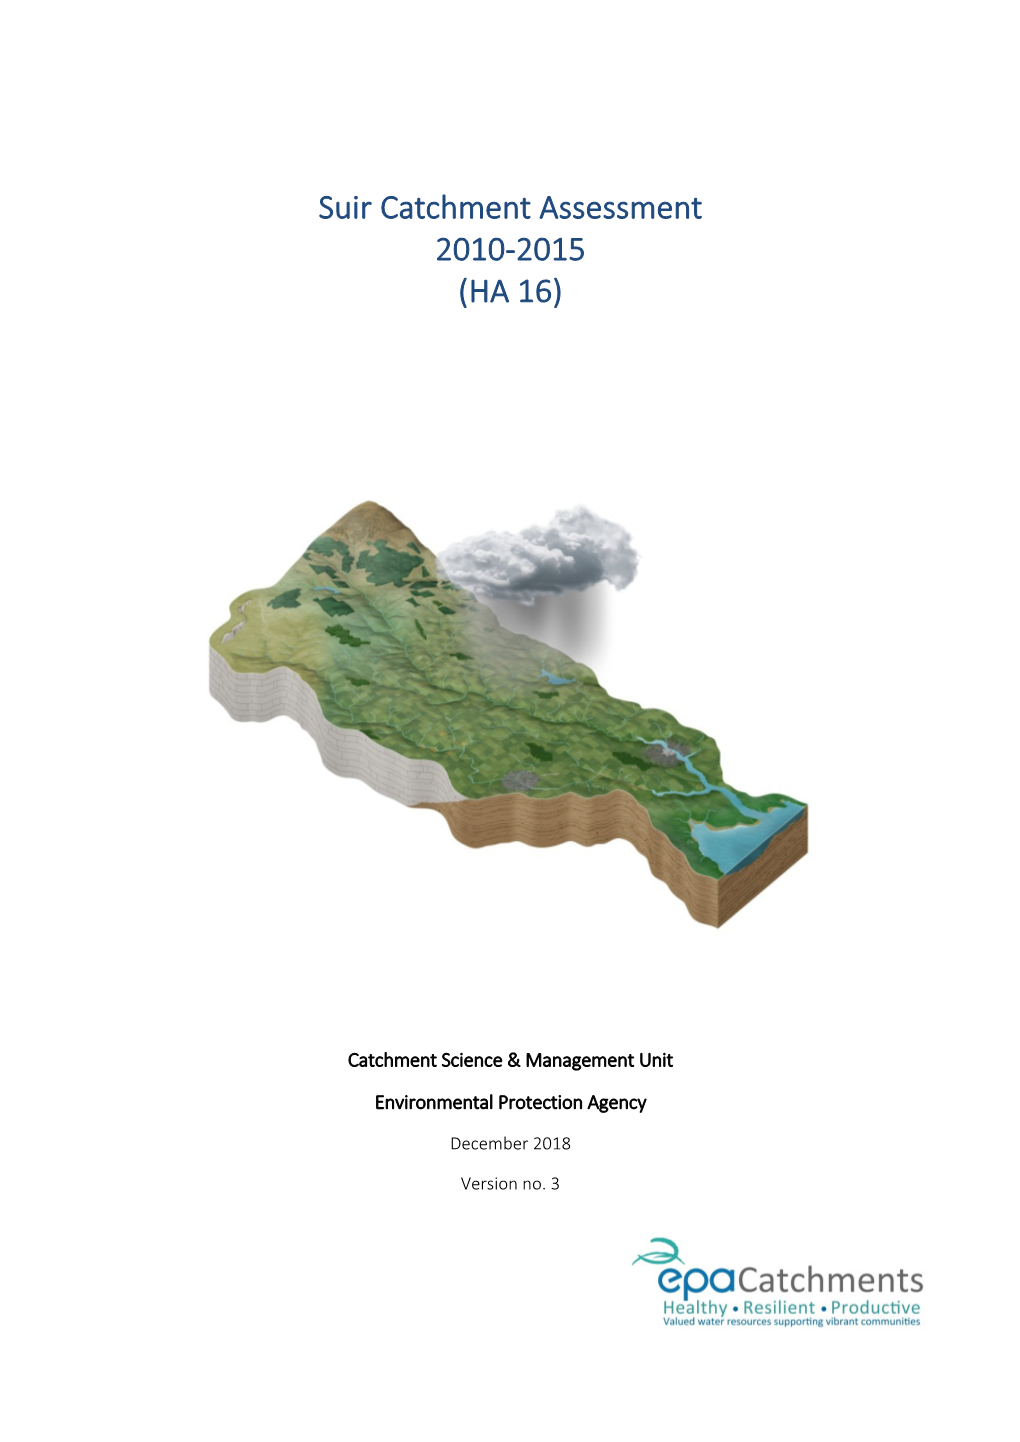 Suir Catchment Assessment 2010-2015 (HA 16)